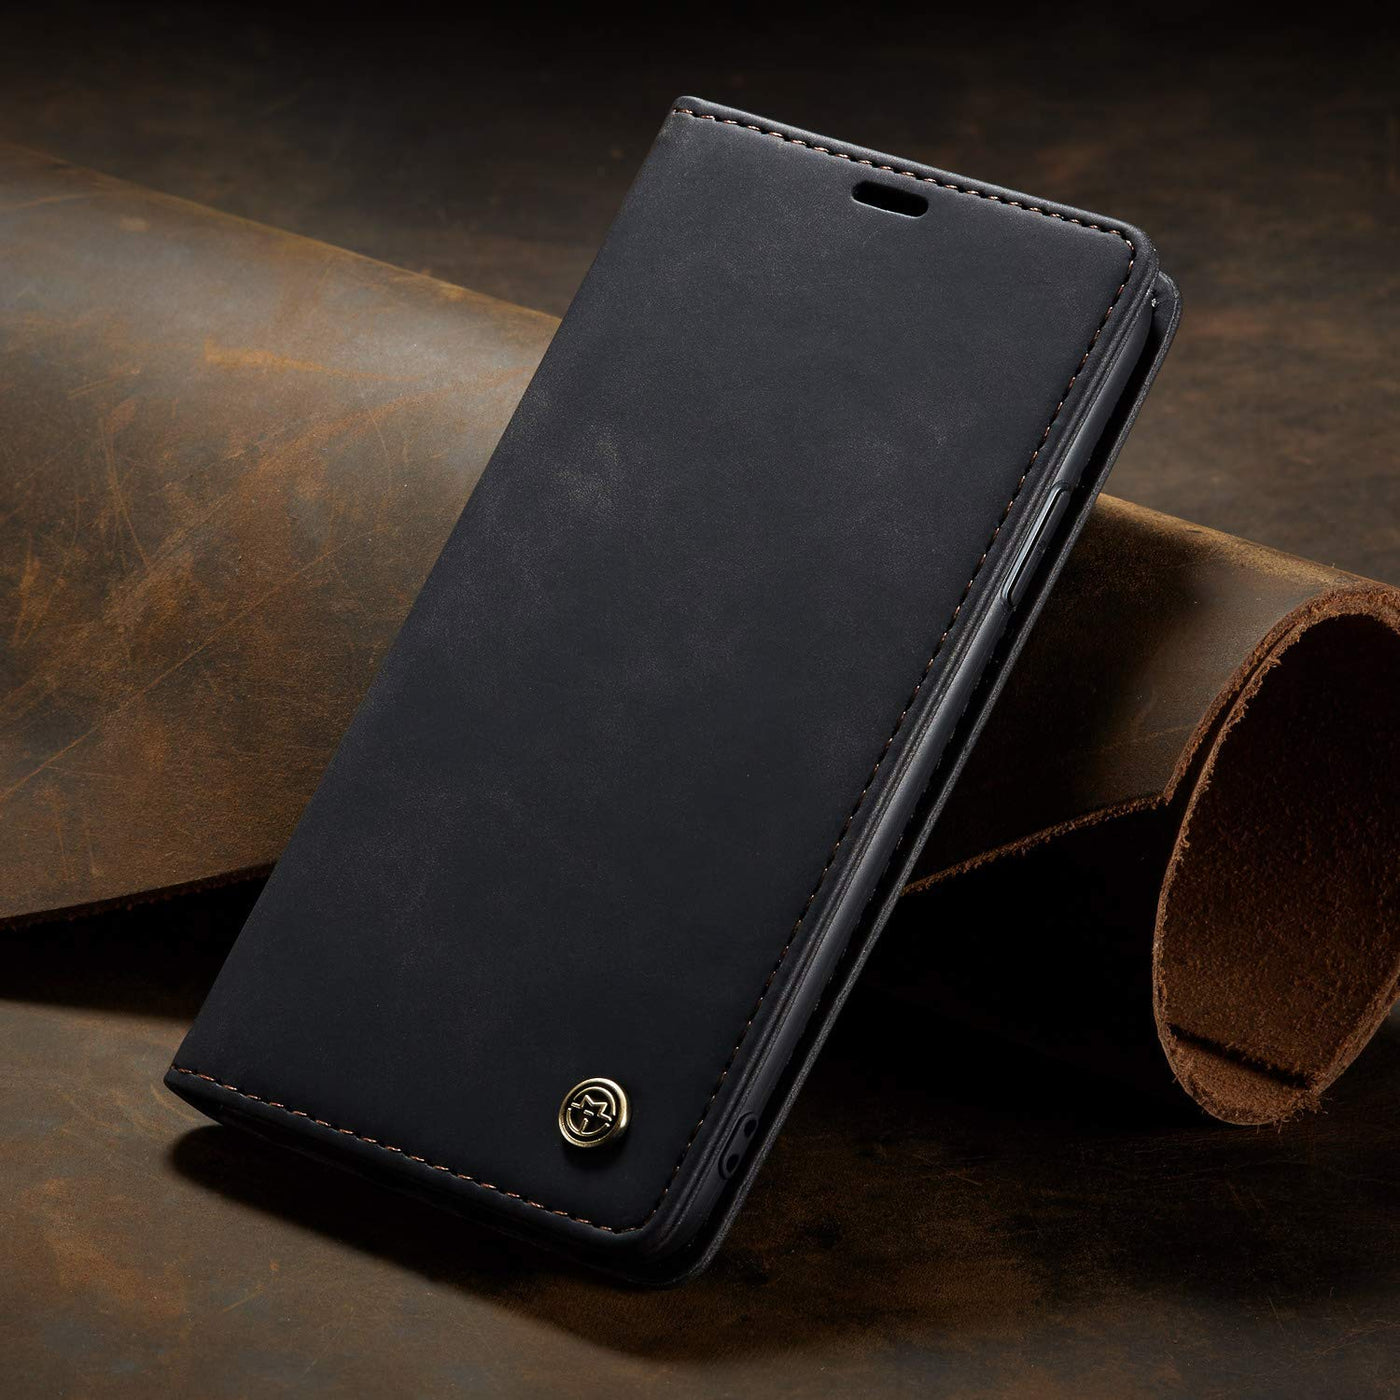 Apple iPhone SE 2020 black color wallet flip cover case By excelsior